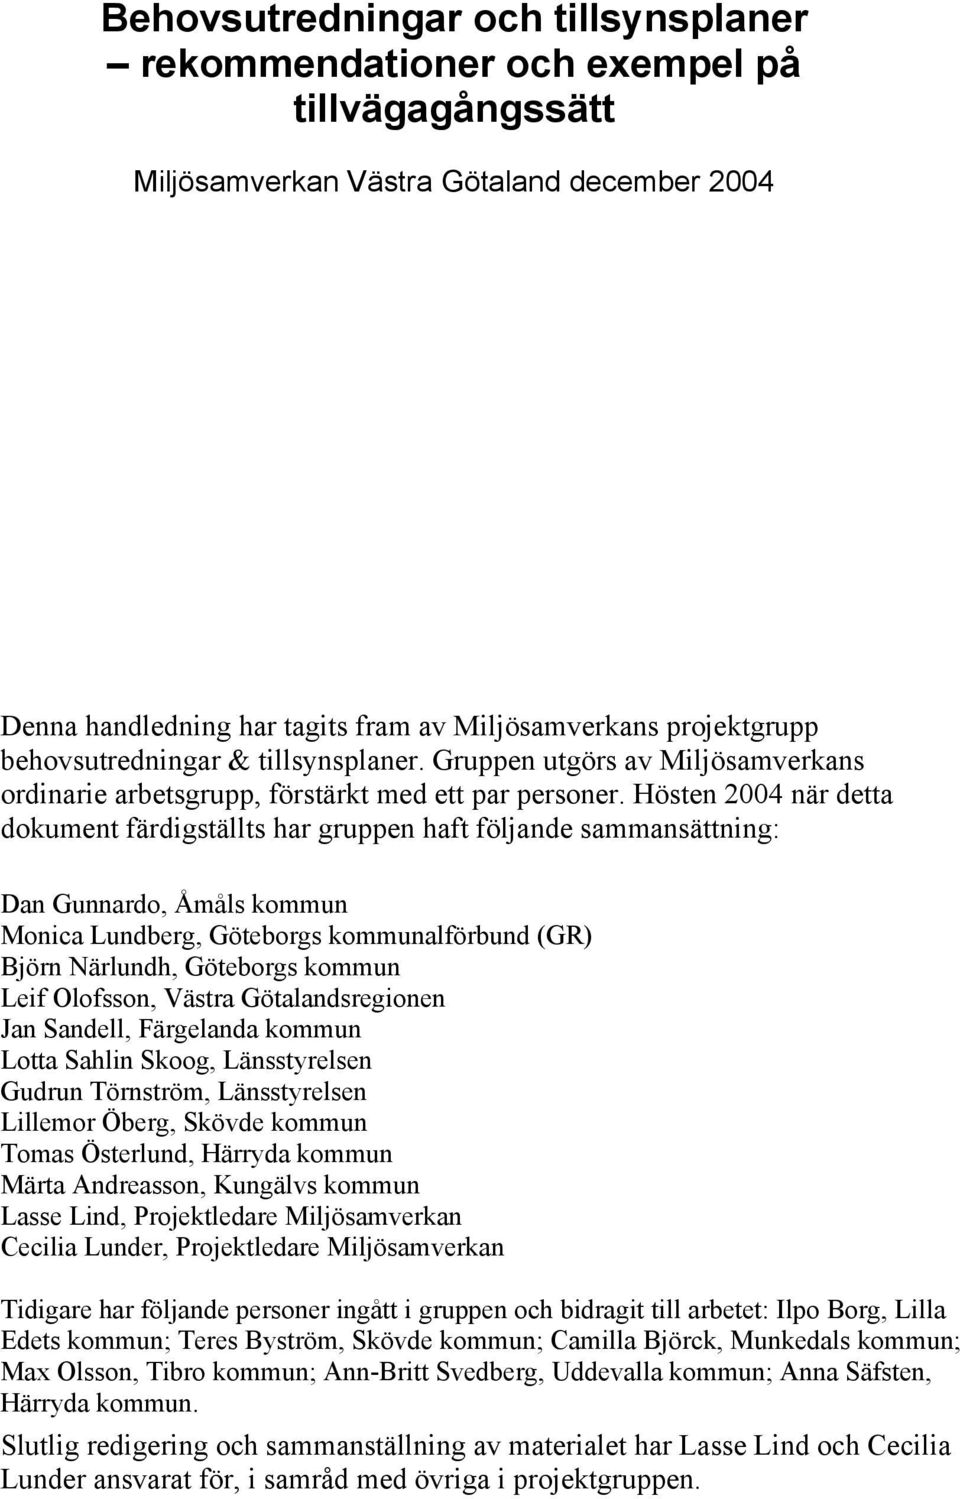 Hösten 2004 när detta dokument färdigställts har gruppen haft följande sammansättning: Dan Gunnardo, Åmåls kommun Monica Lundberg, Göteborgs kommunalförbund (GR) Björn Närlundh, Göteborgs kommun Leif